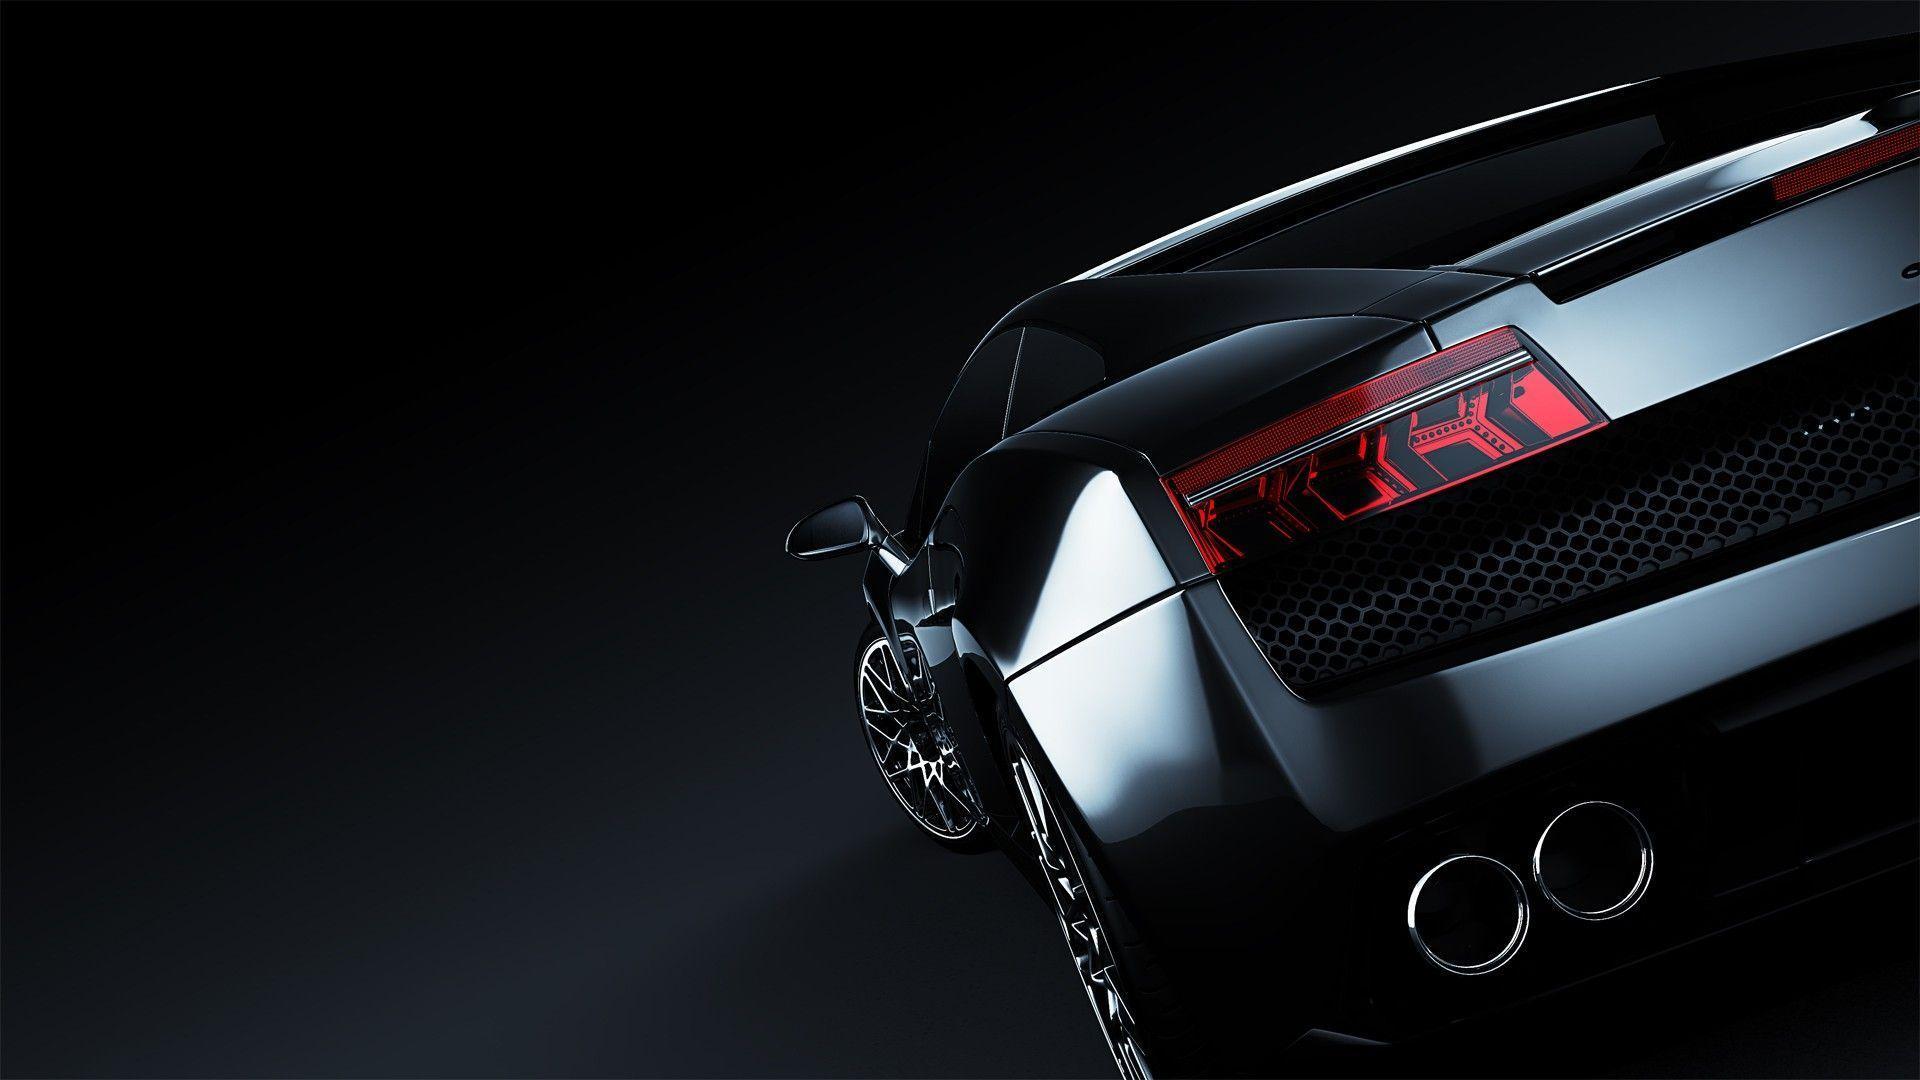 Luxury Lamborghini HD Wallpaper 1080p Cars. yry